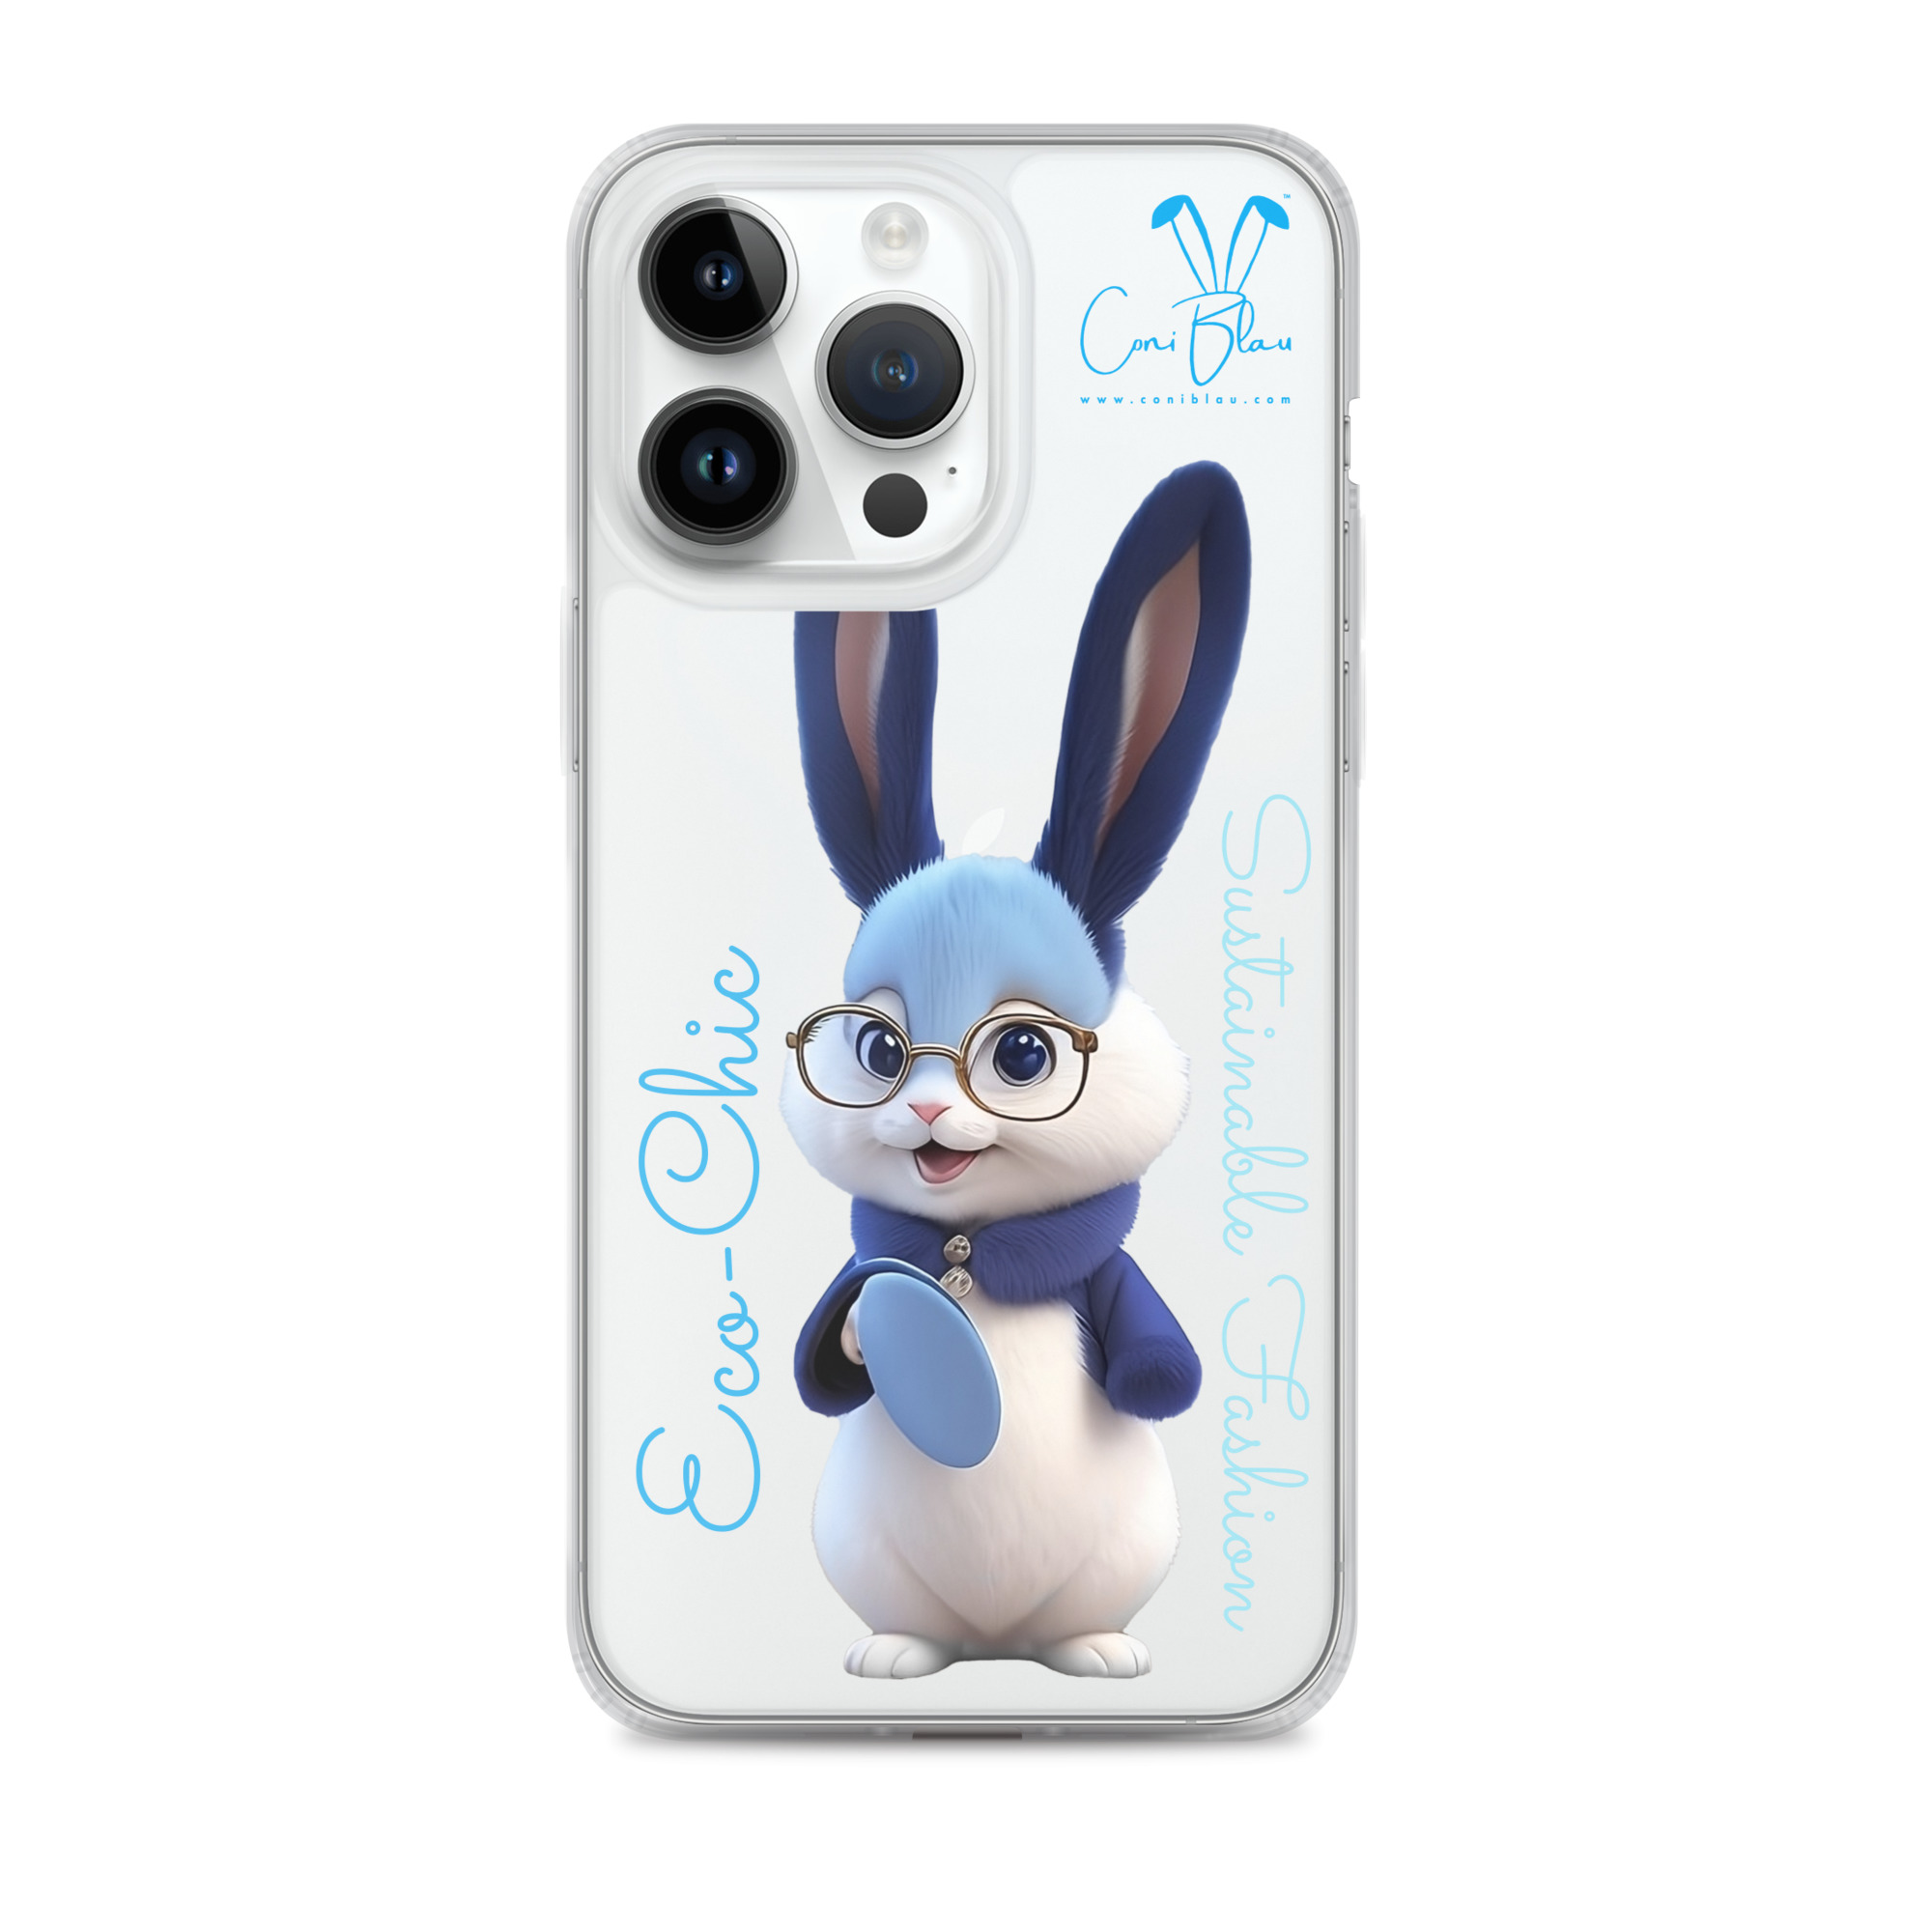 Coque pour iPhone 12 mini - Stitch Merry Christmas. Accessoire téléphone